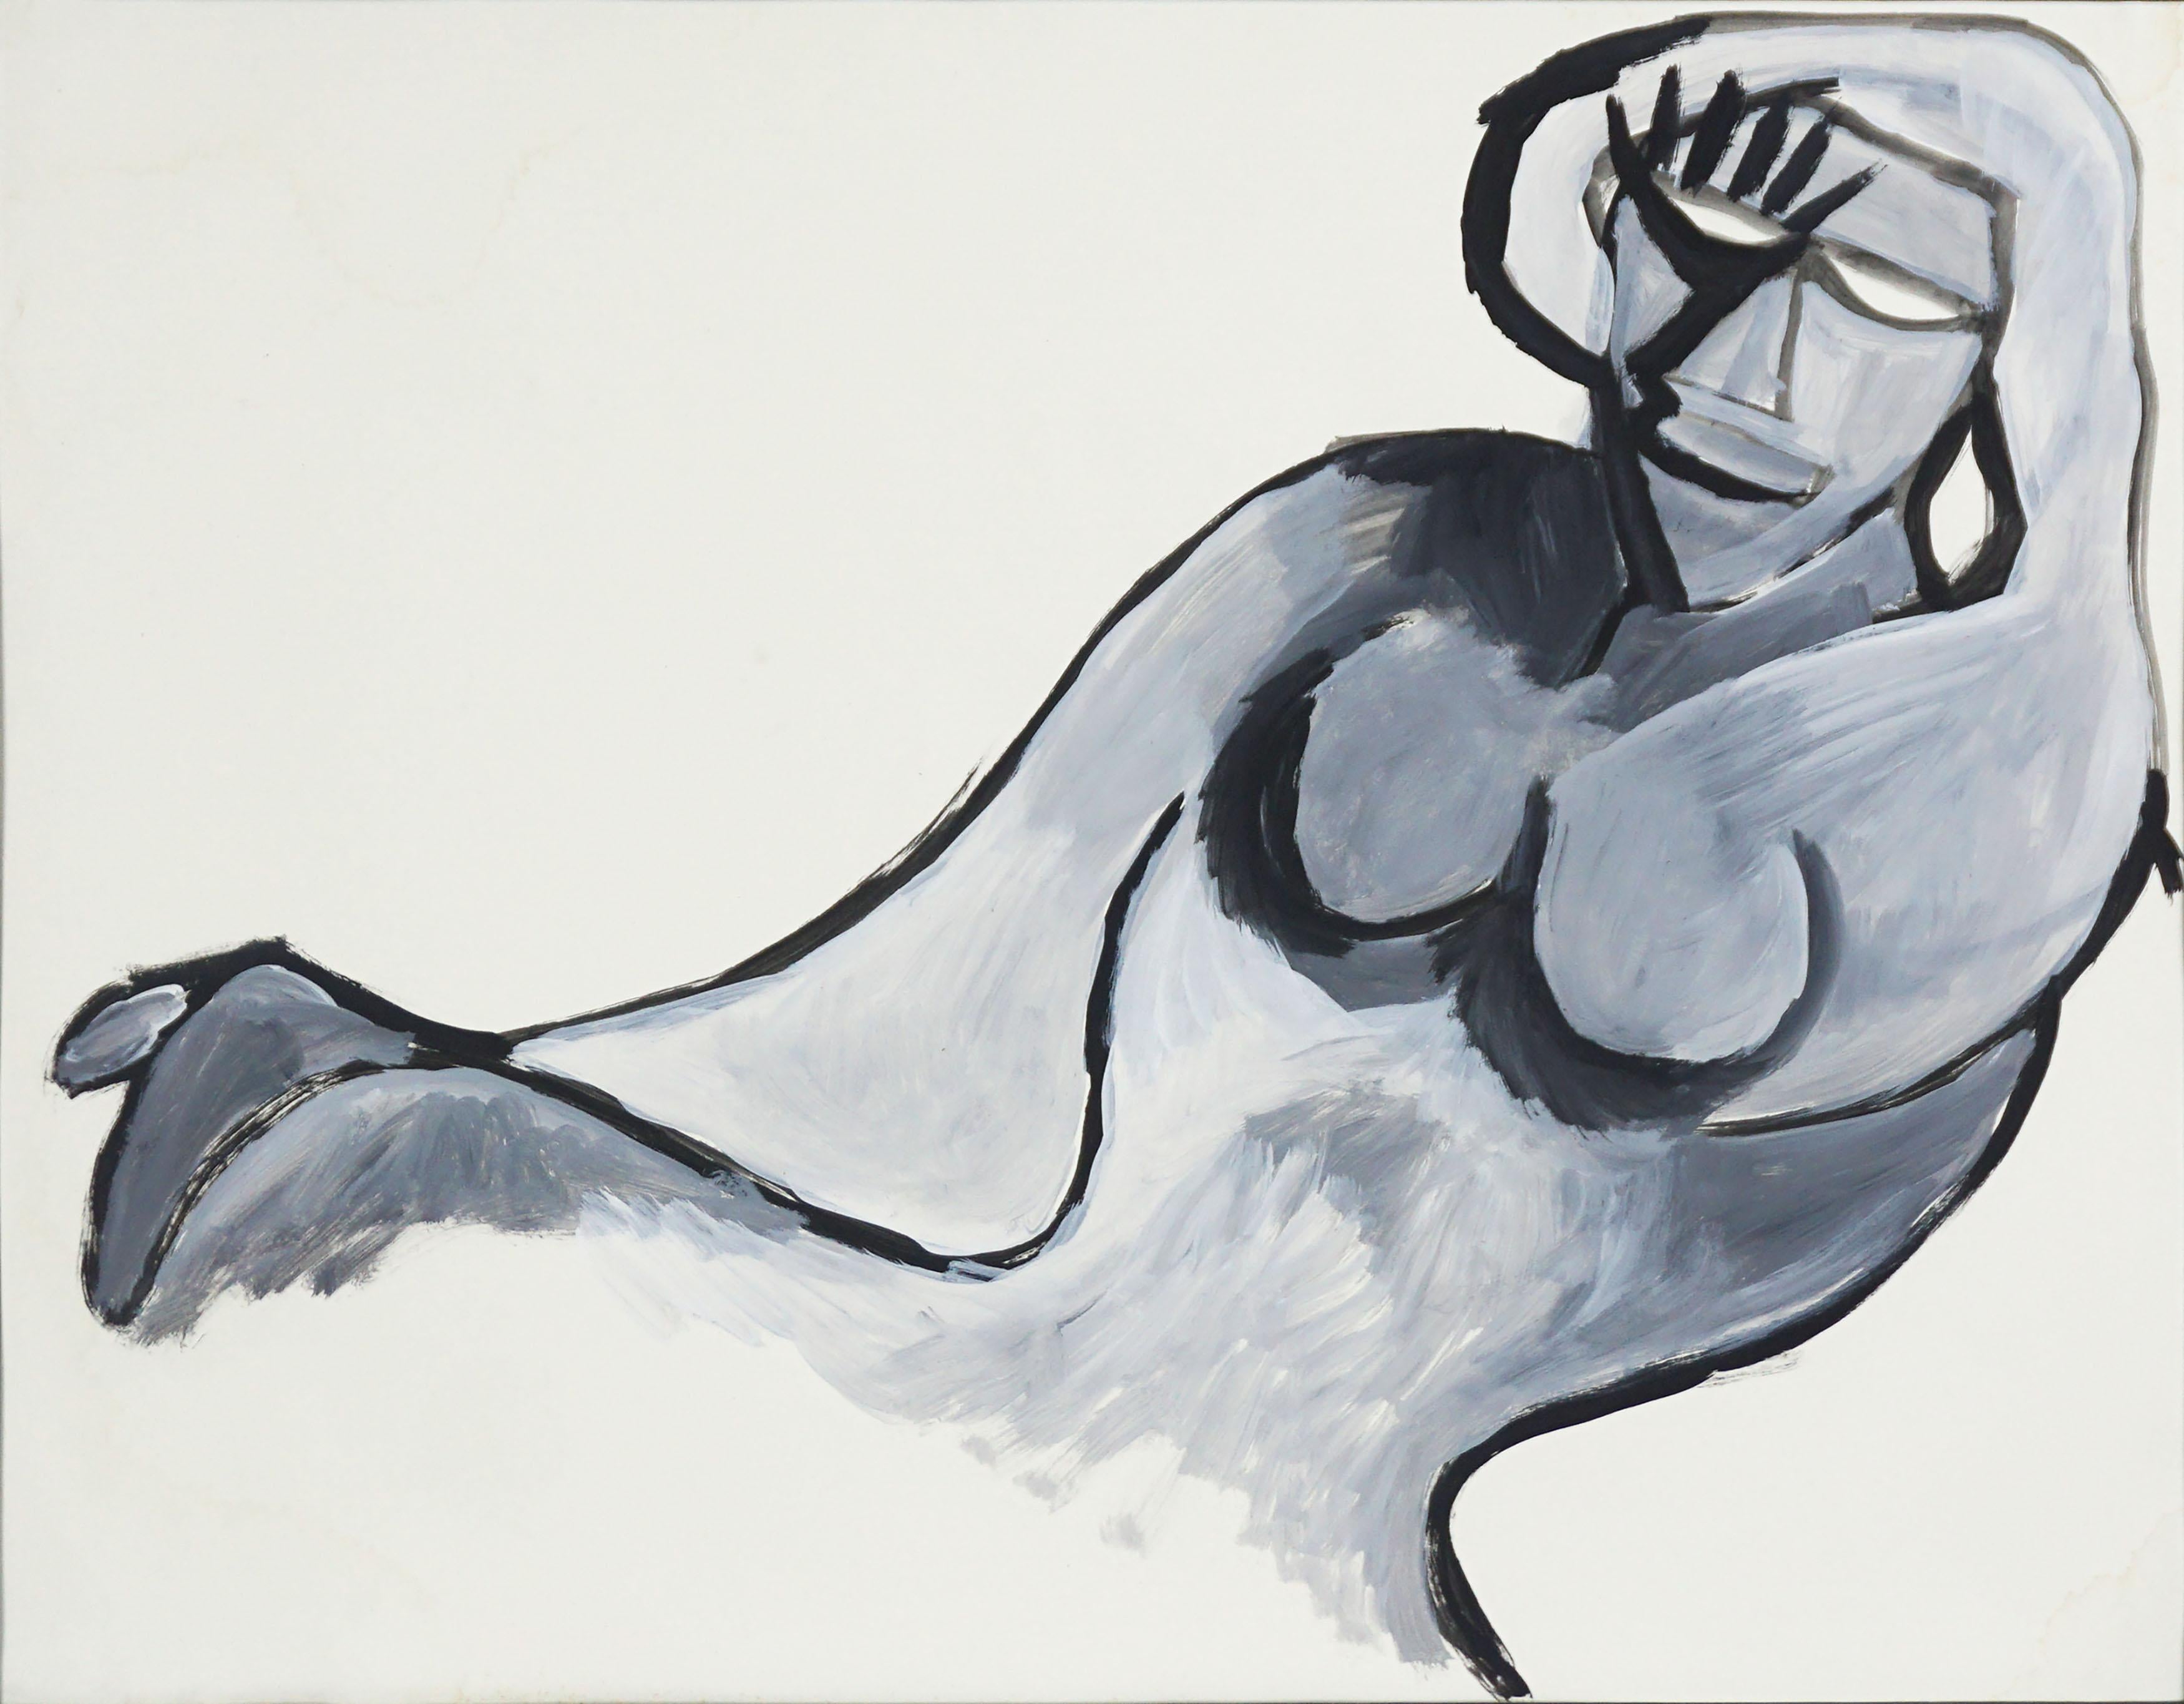 Rechteckiger Akt des abstrakten Expressionismus in Schwarz und Grau – Painting von Michael William Eggleston